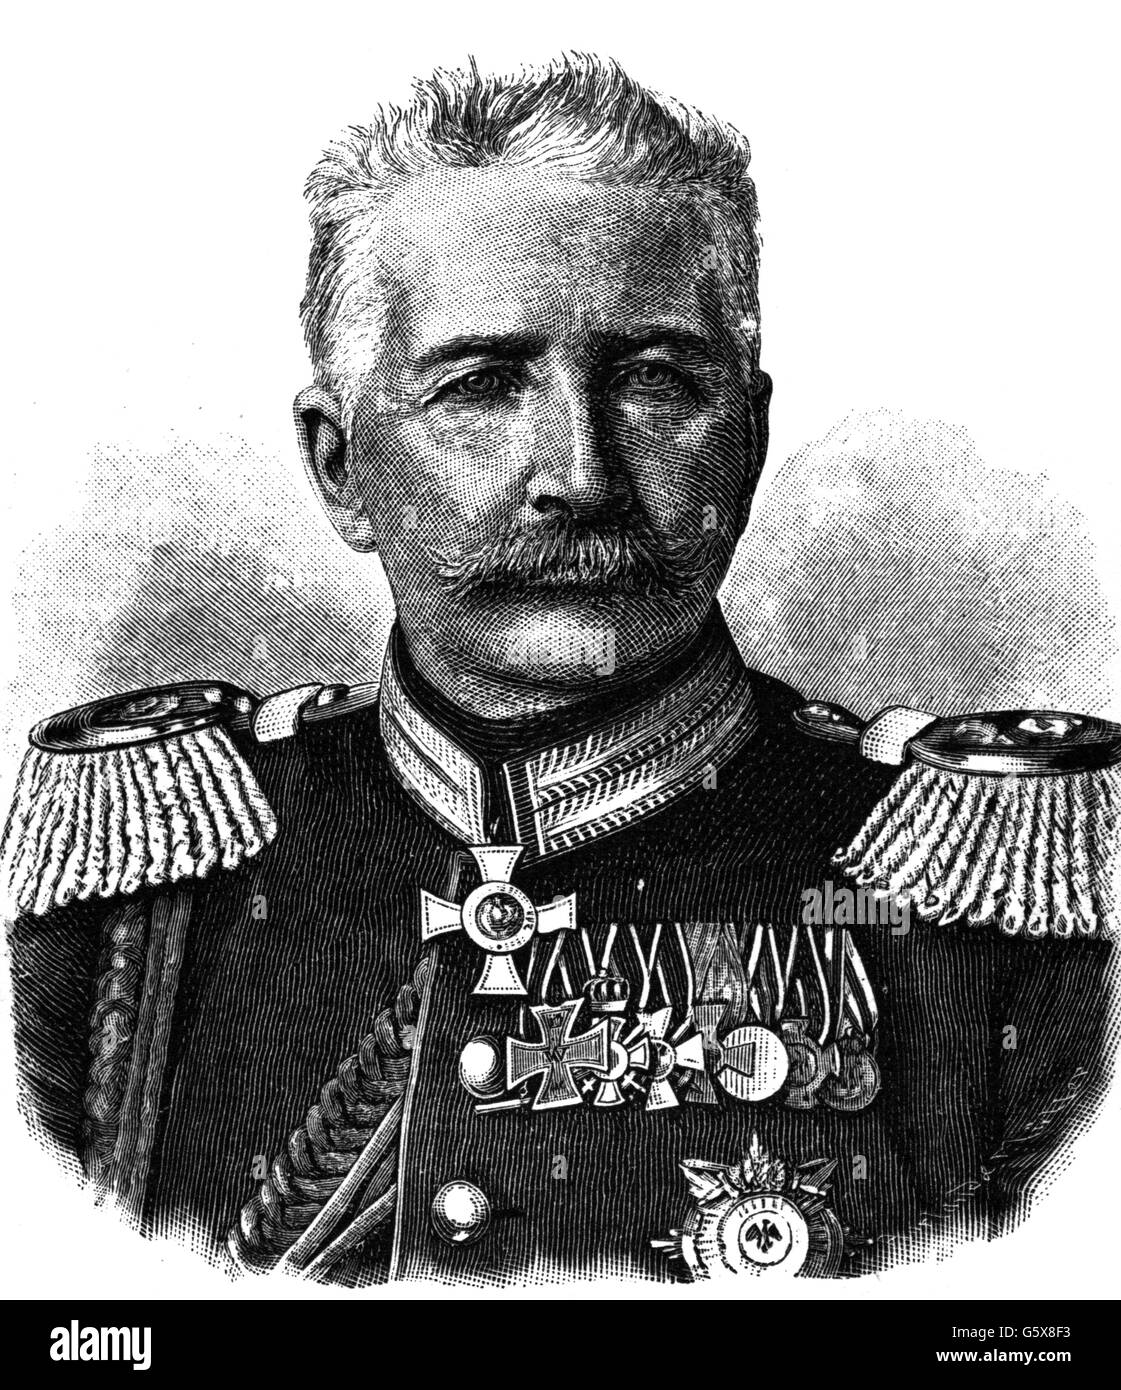 Alfred von Waldersee, comptage, 8.4.1832 - 5.3.1904, le général allemand, le général commandant le IX Corps d'armée - 2.2.1891 4.4.1898, portrait, gravure sur bois, vers 1895, l'artiste n'a pas d'auteur pour être effacé Banque D'Images